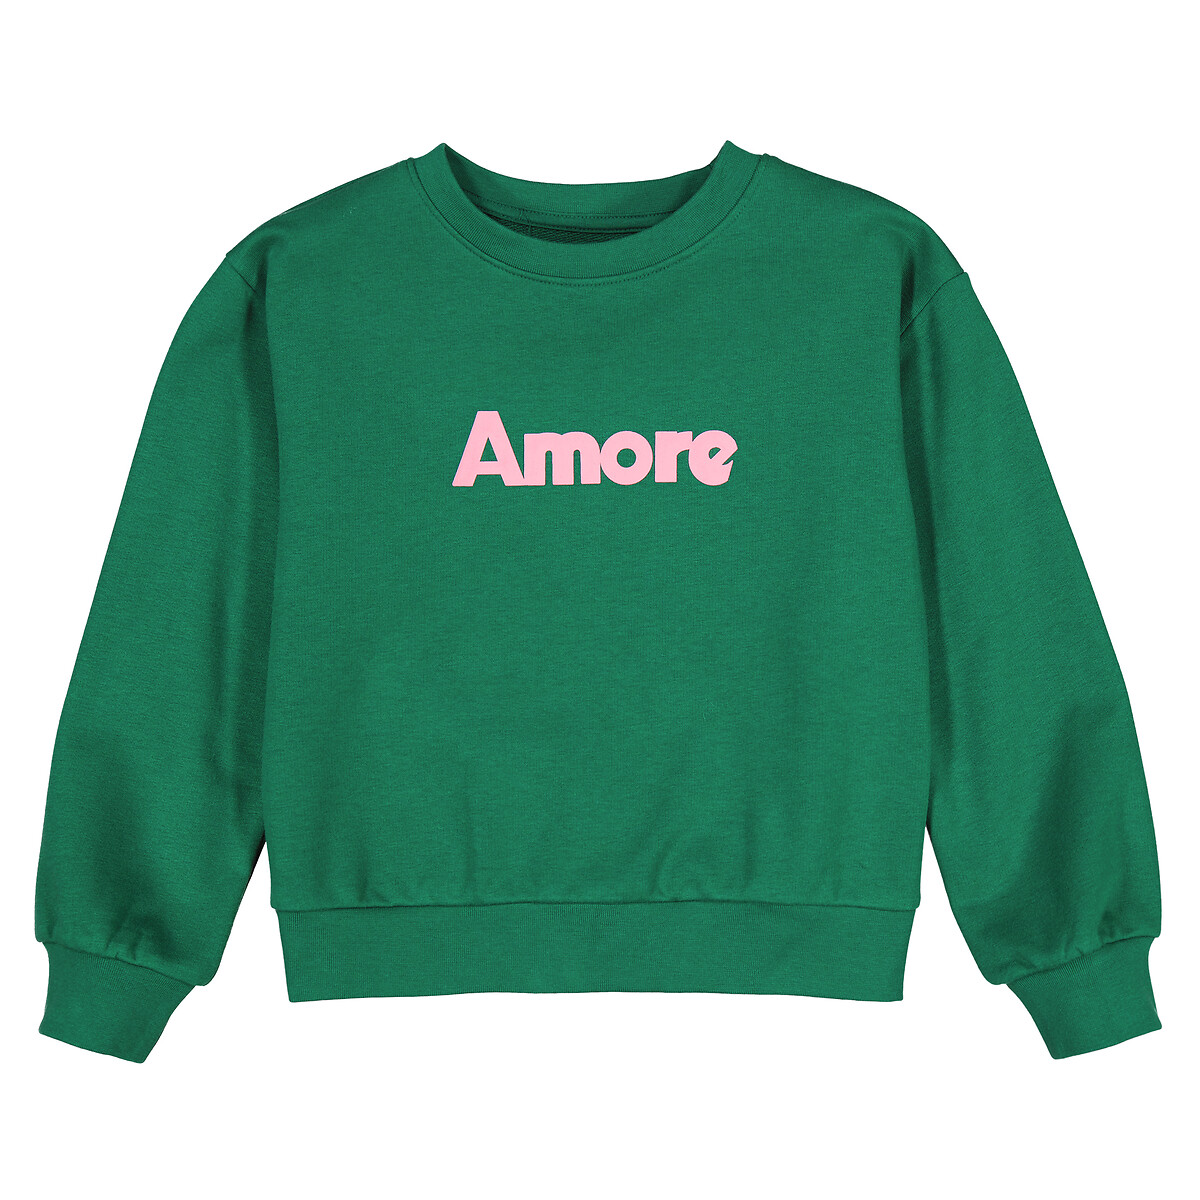 Свитшот с круглым вырезом из мольтона с надписью Amore  5 лет - 108 см зеленый LaRedoute, размер 5 лет - 108 см - фото 3